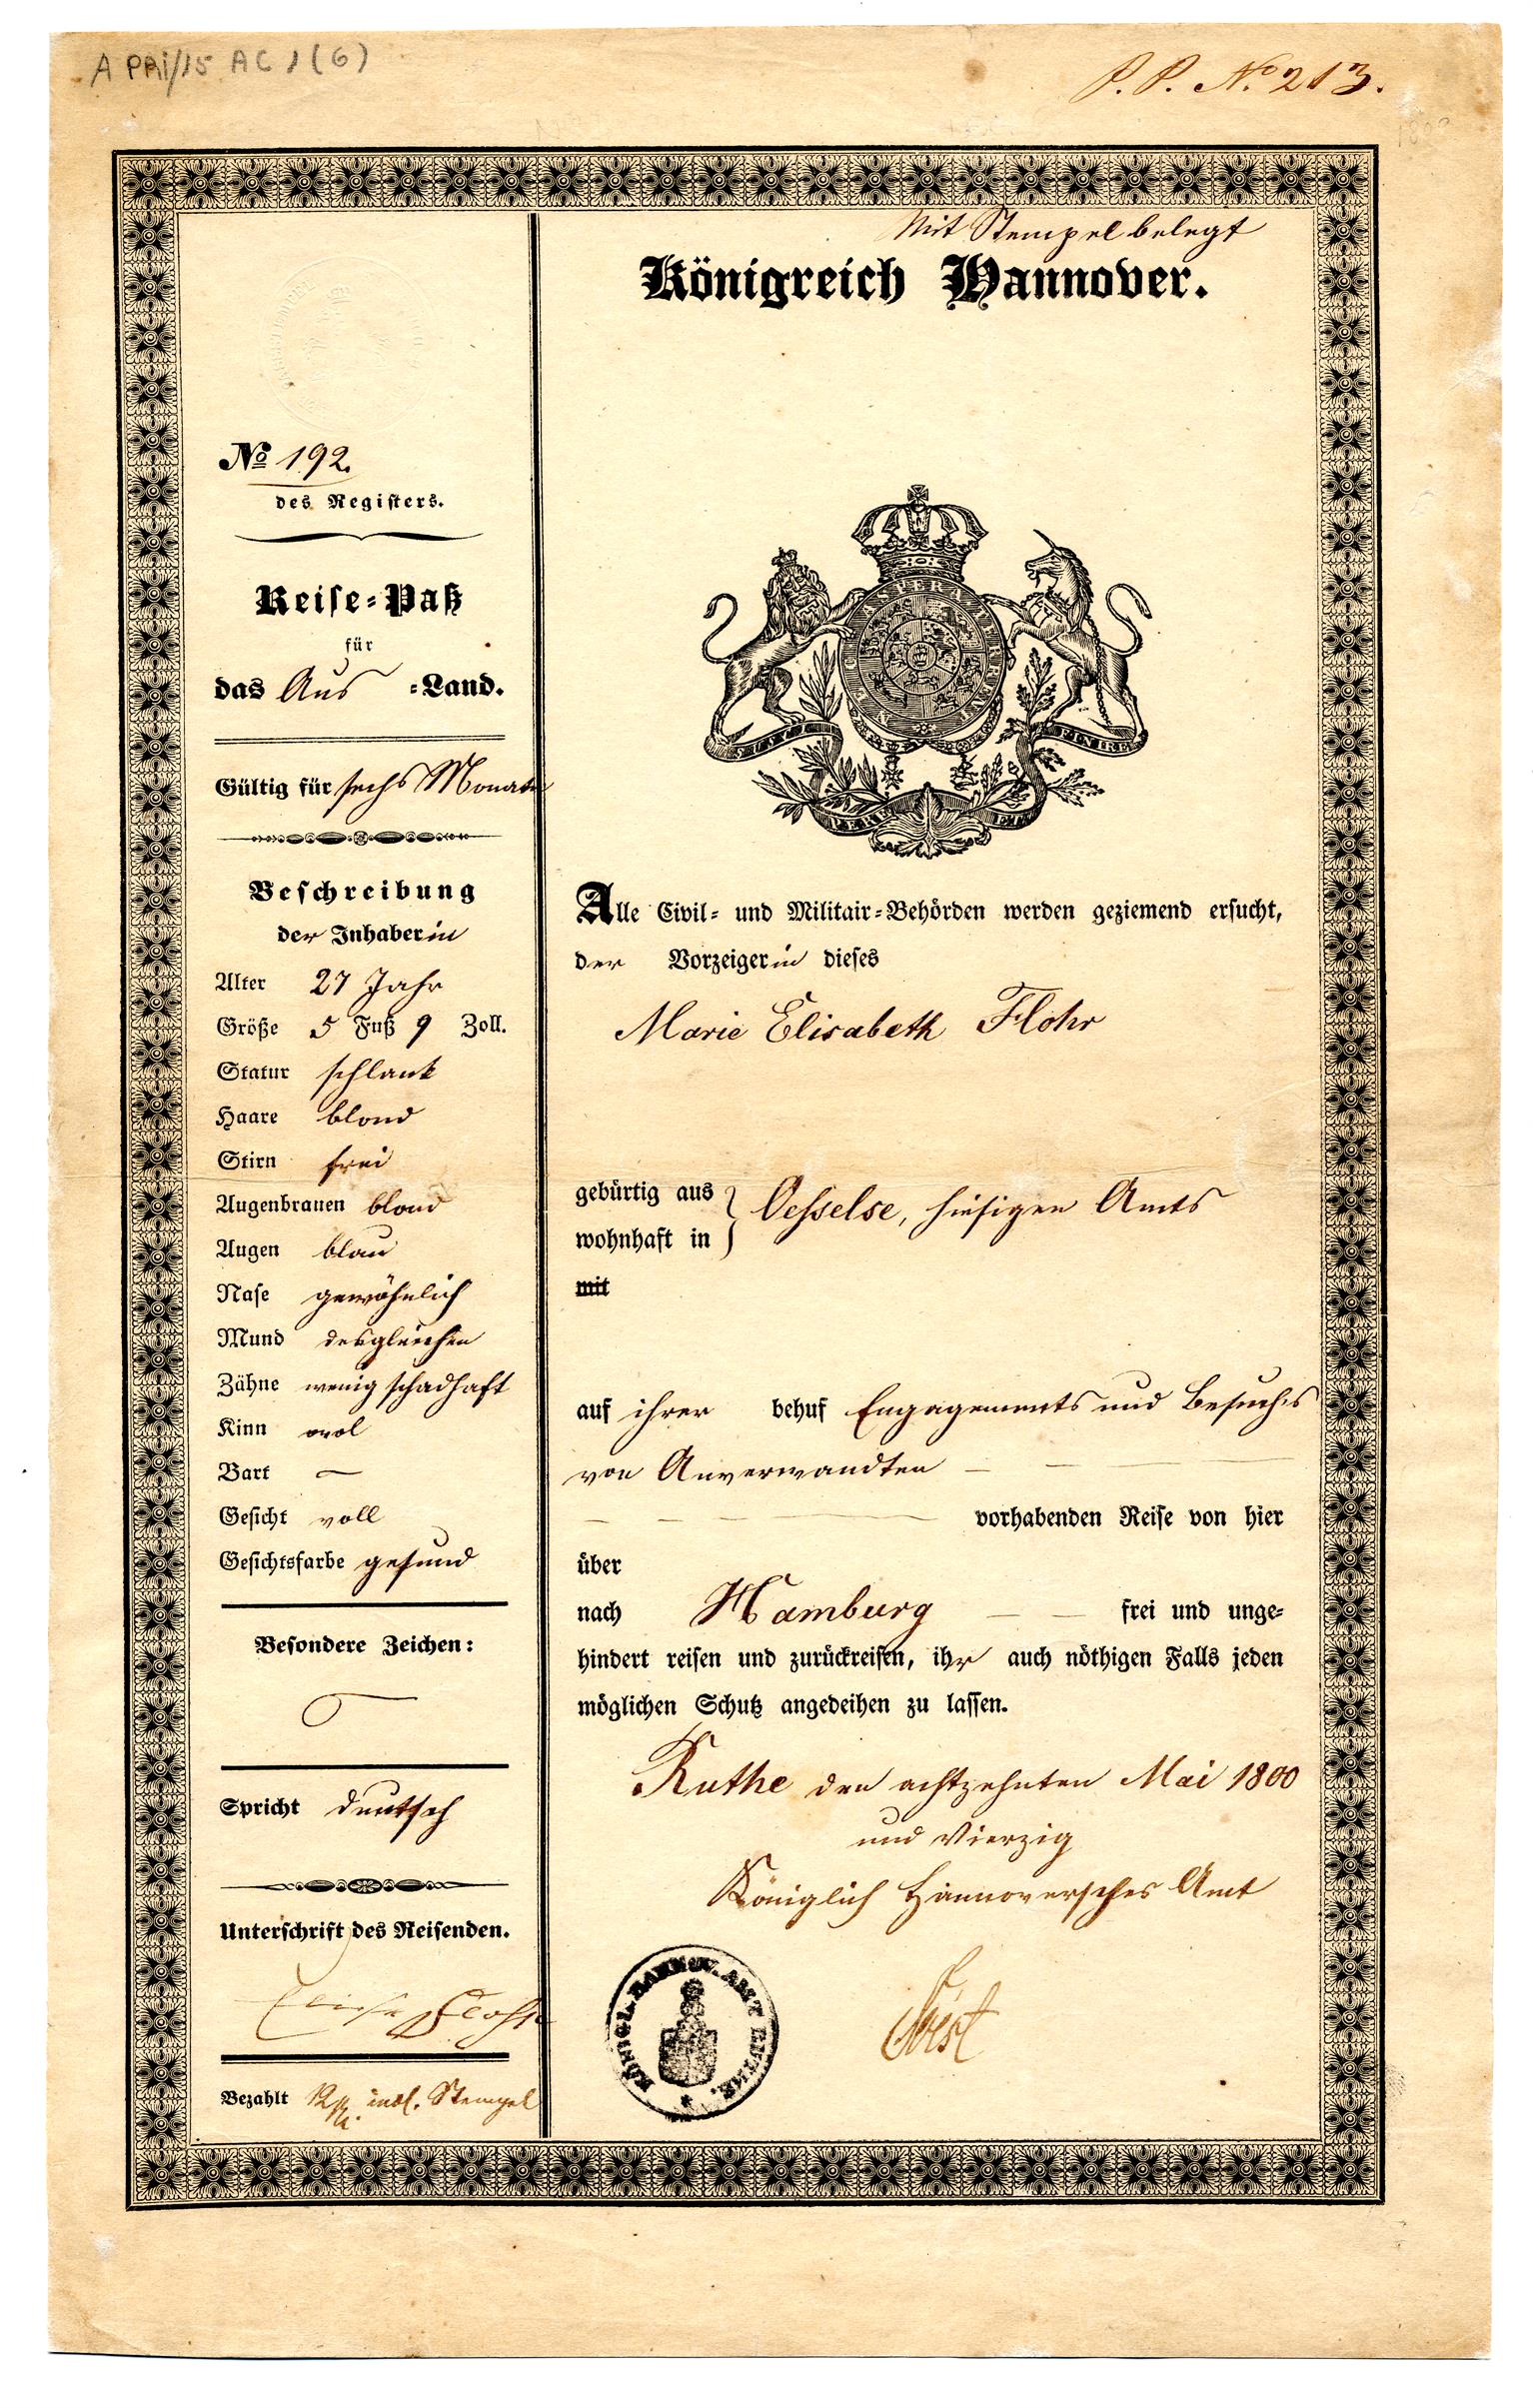 Passaporte de Marie Elisabeth Flohr